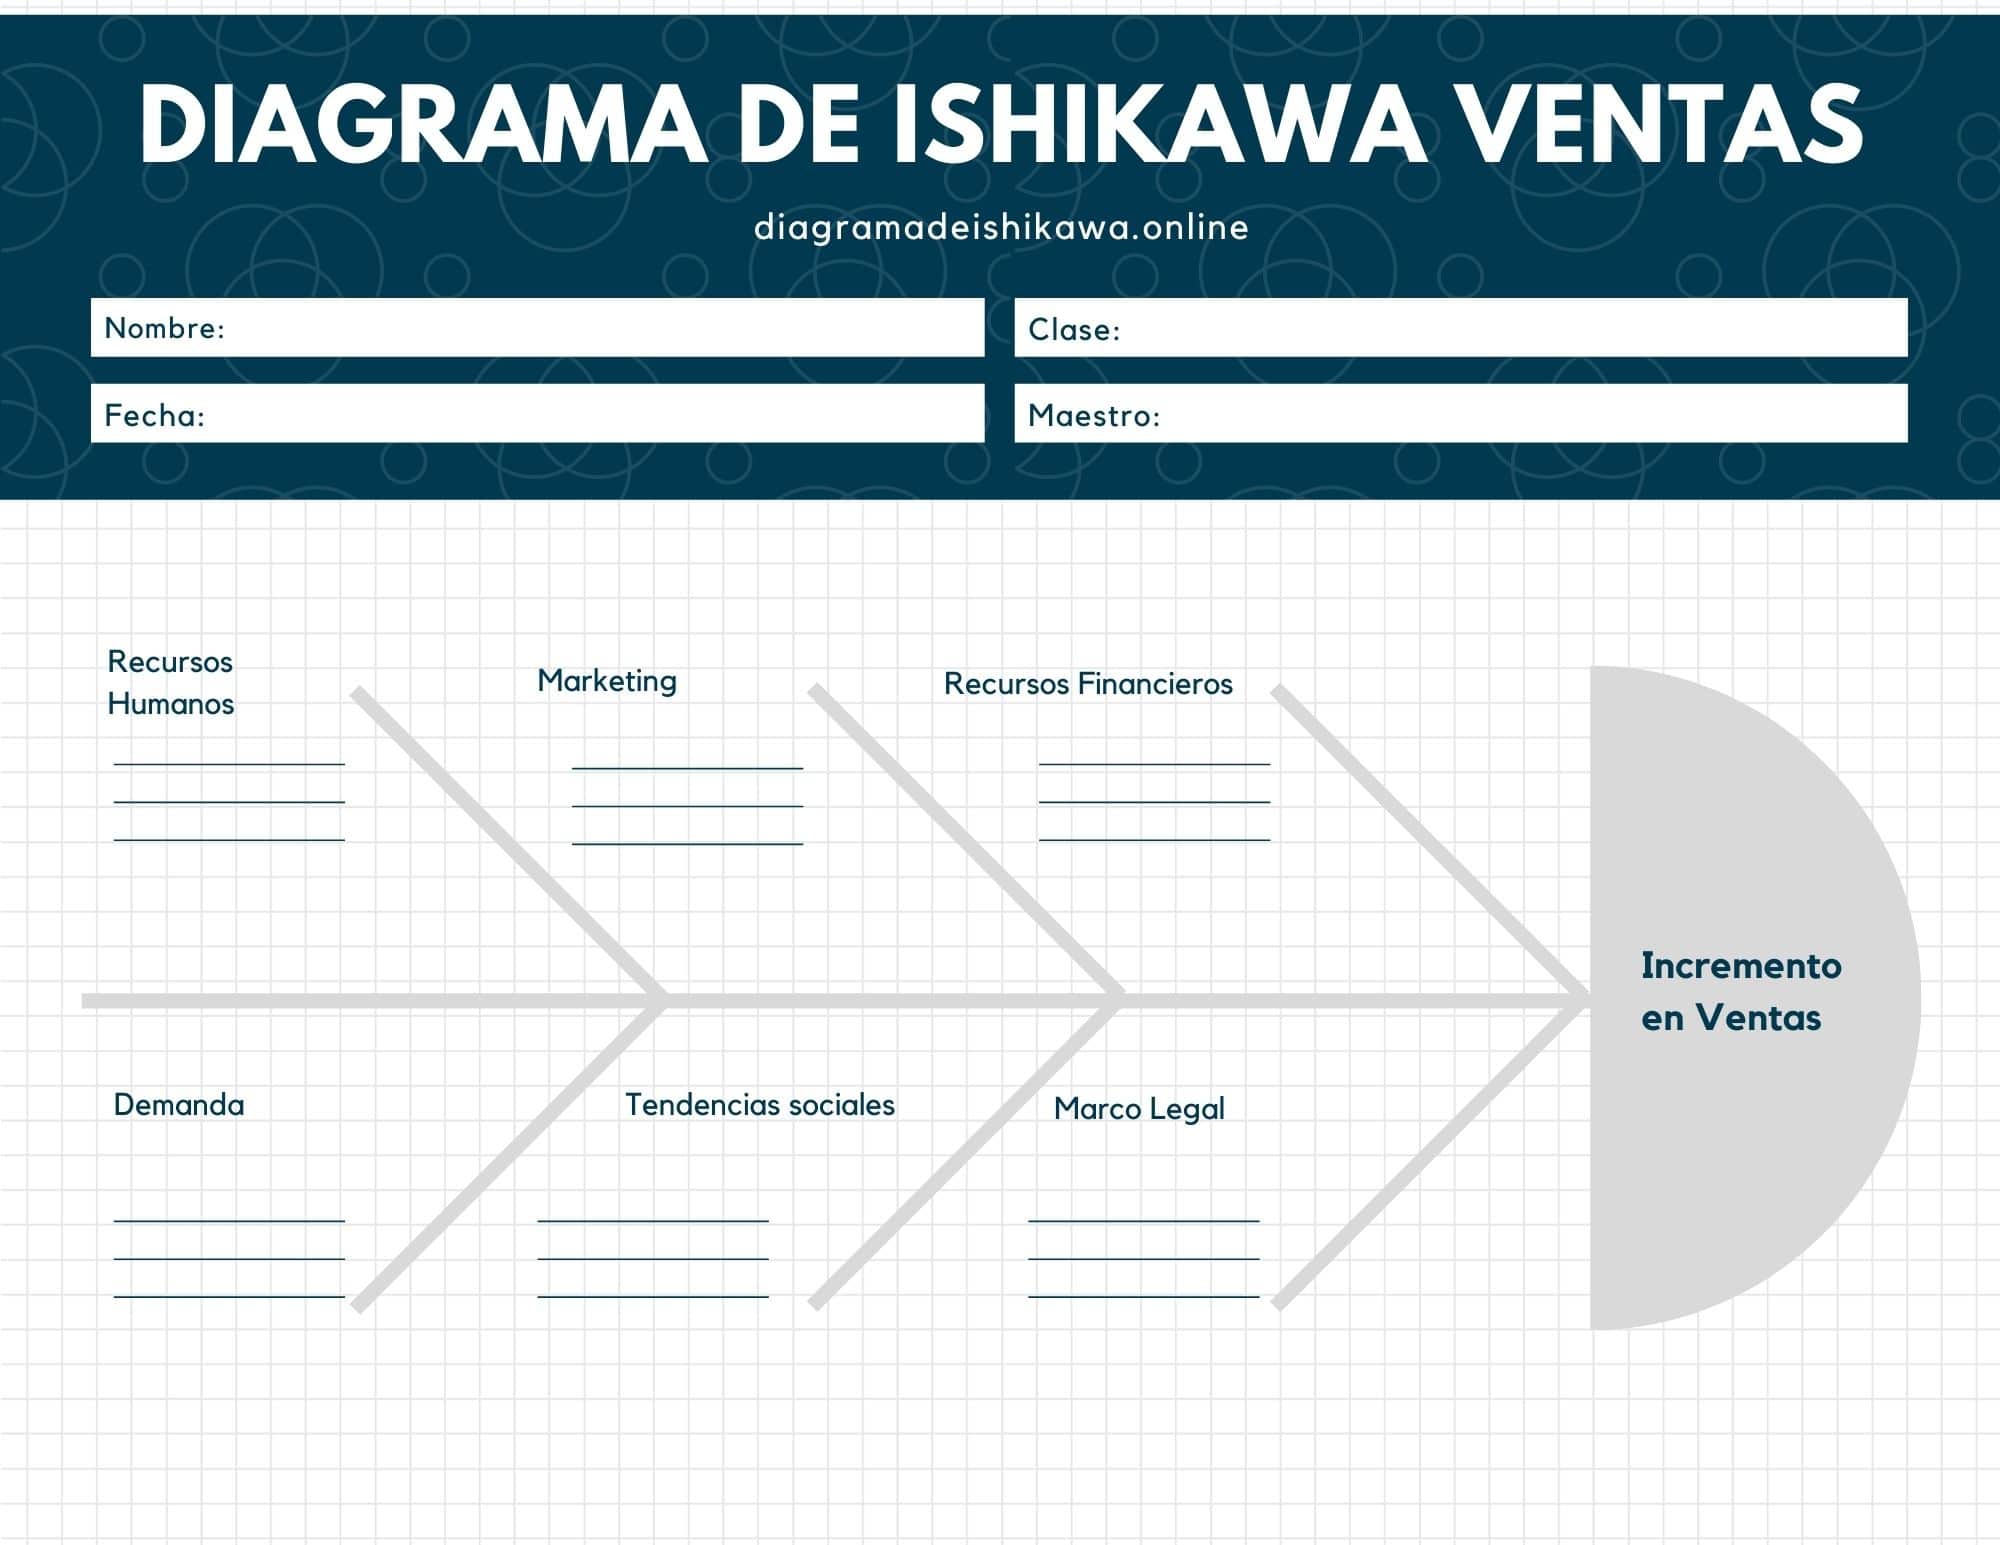 Diagrama de Ishikawa para ventas